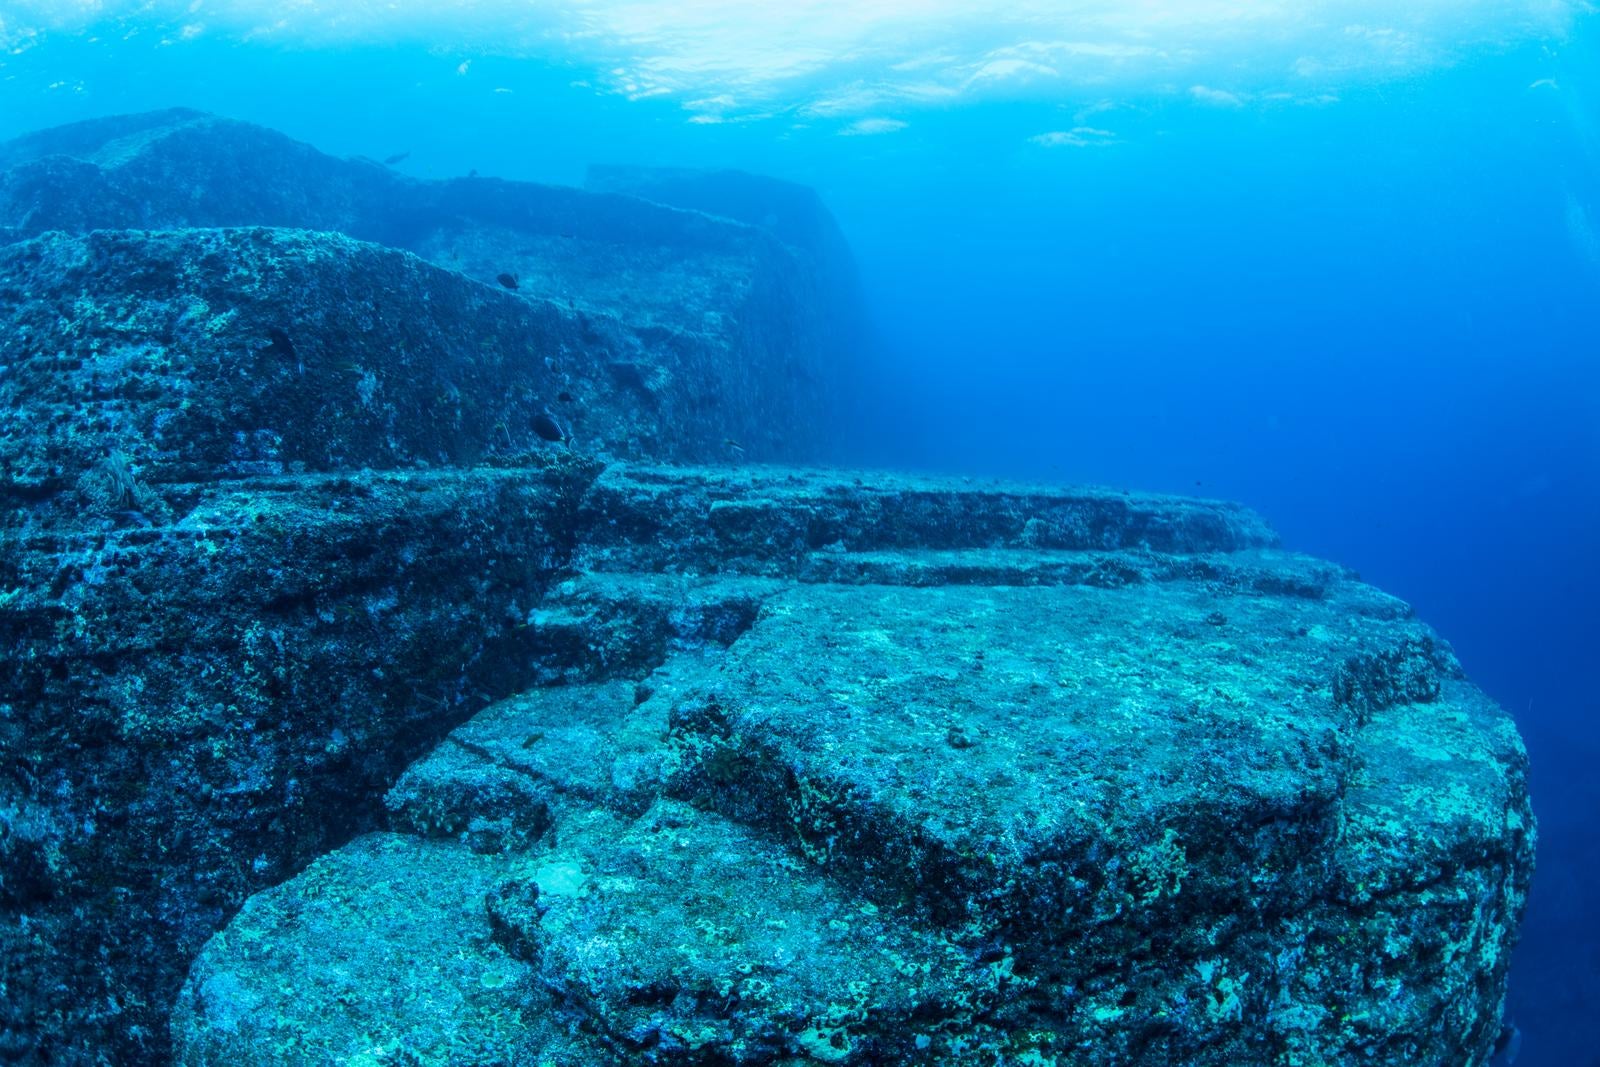 「与那国島、古代の海底遺跡の様子」の写真